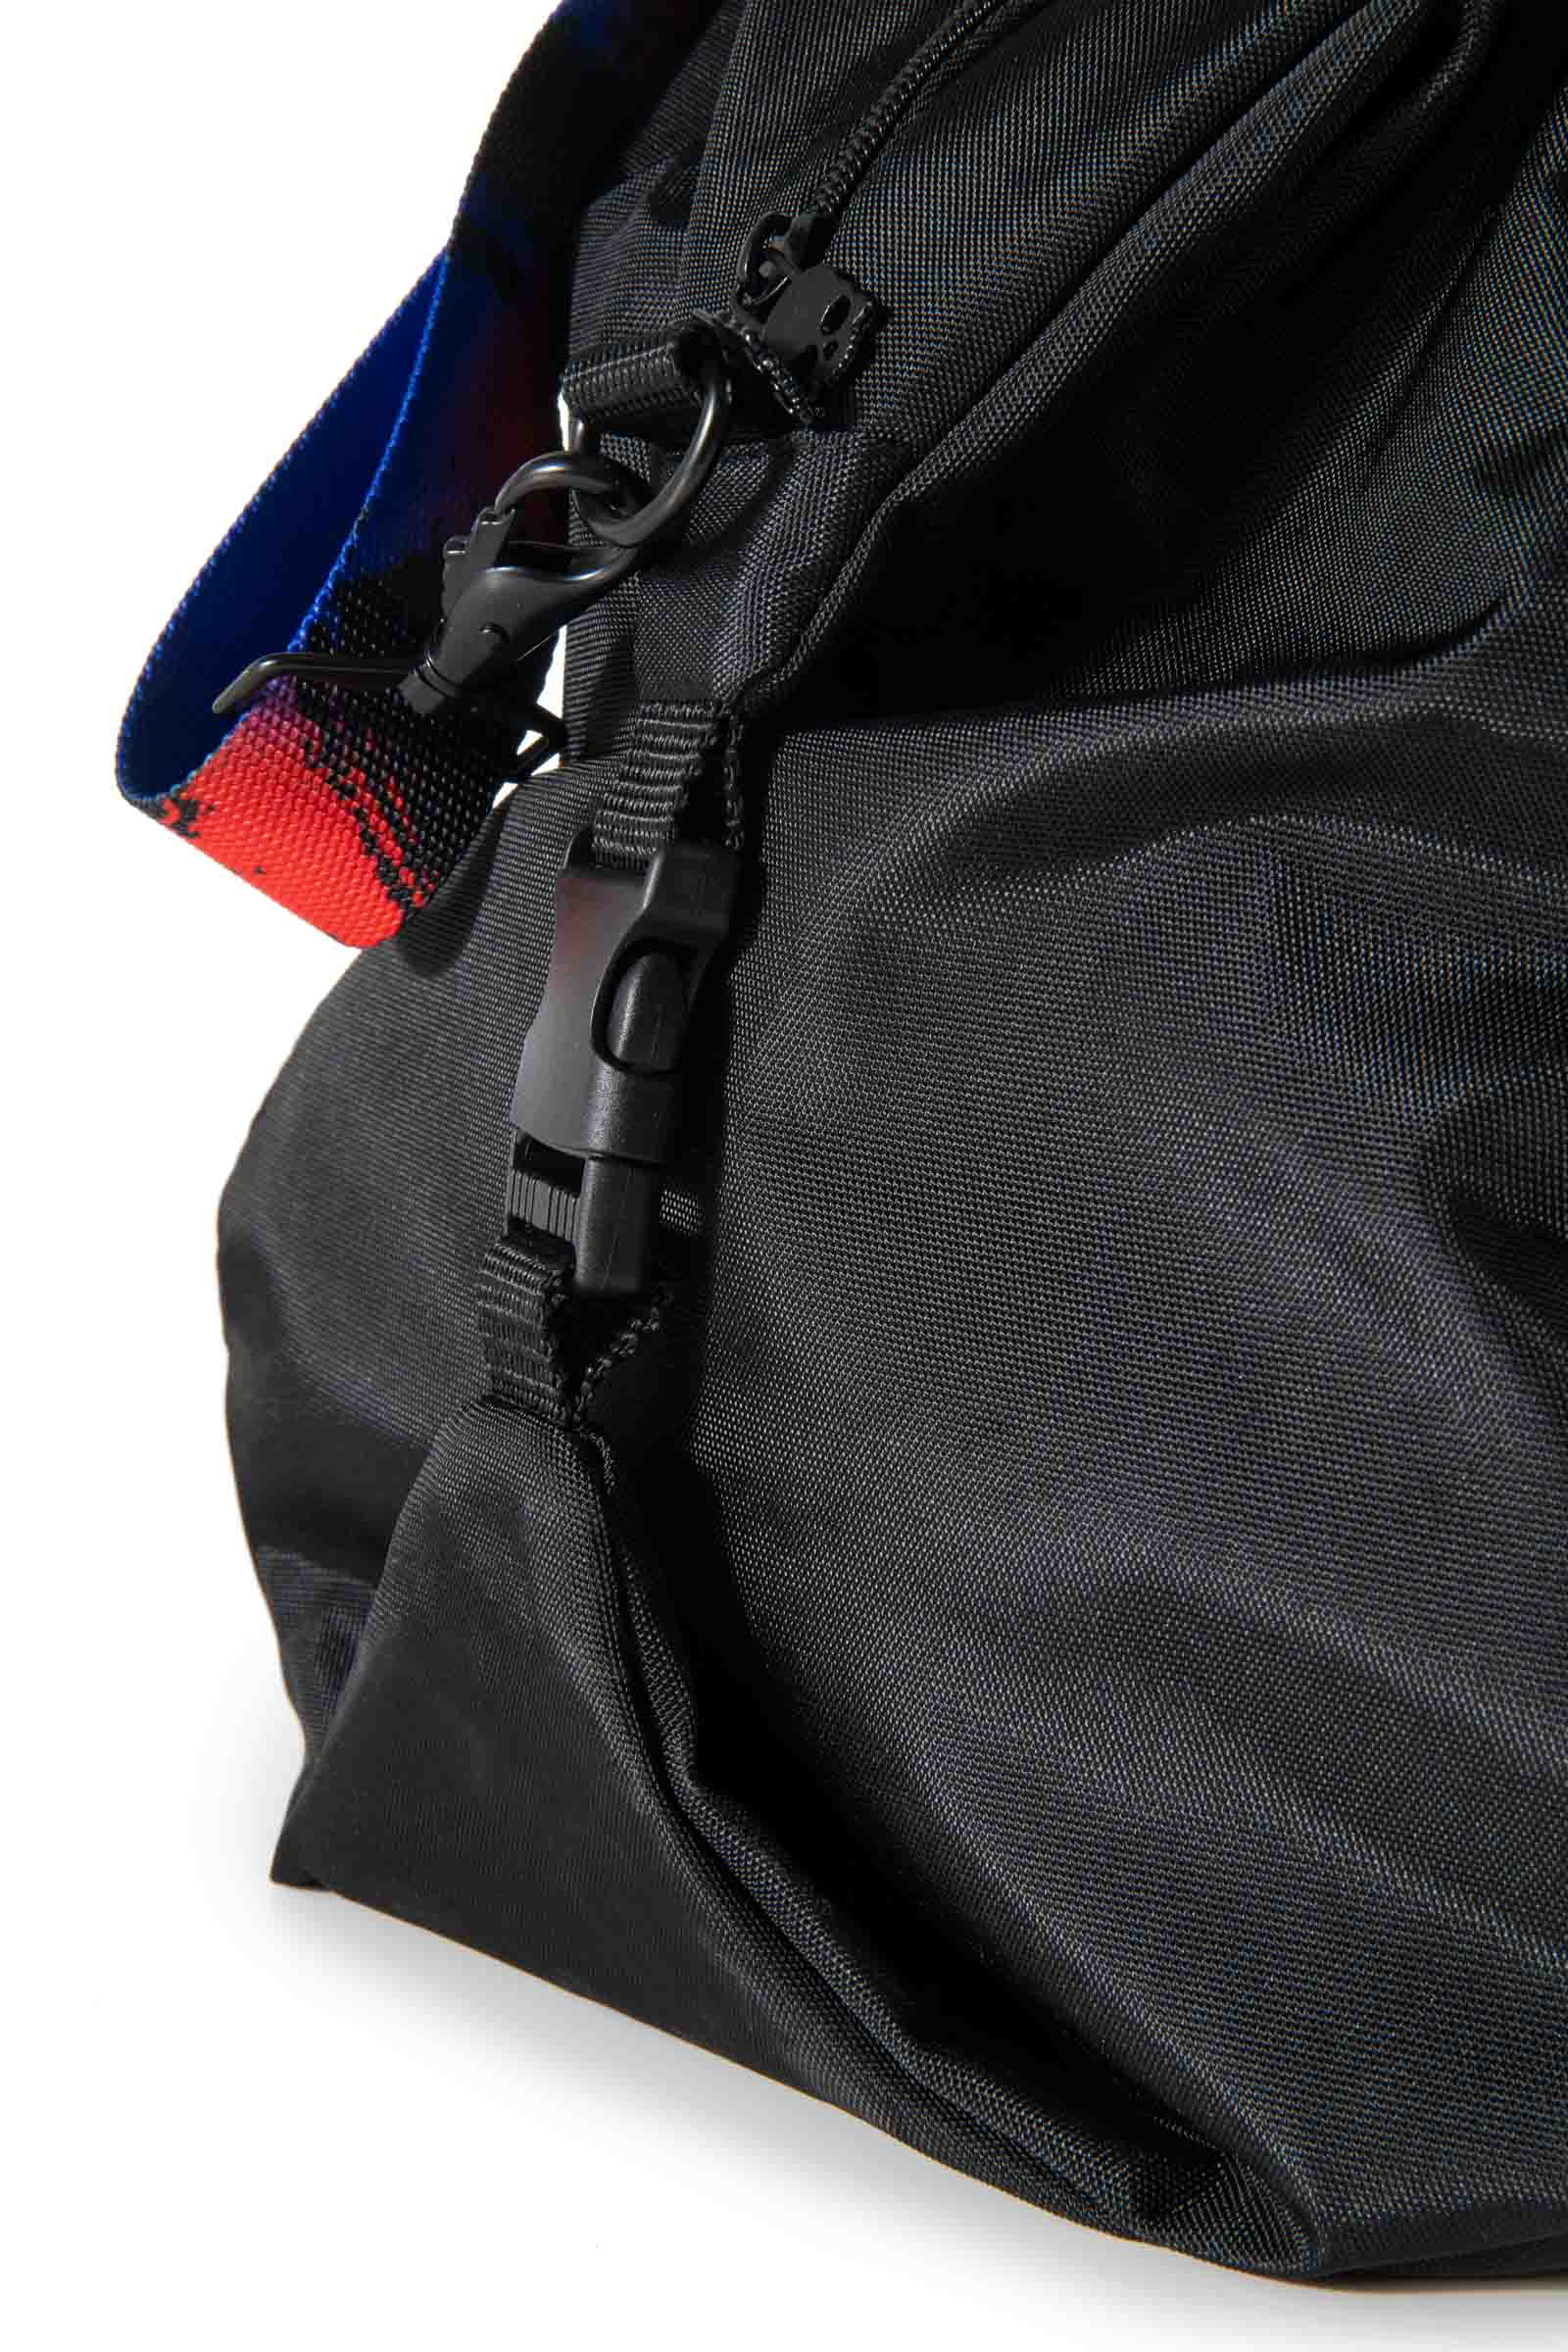 RANDOM BAG PRINCE BY HYDROGEN - BLACK,RED,BLUE - Hydrogen - Luxury Sportwear